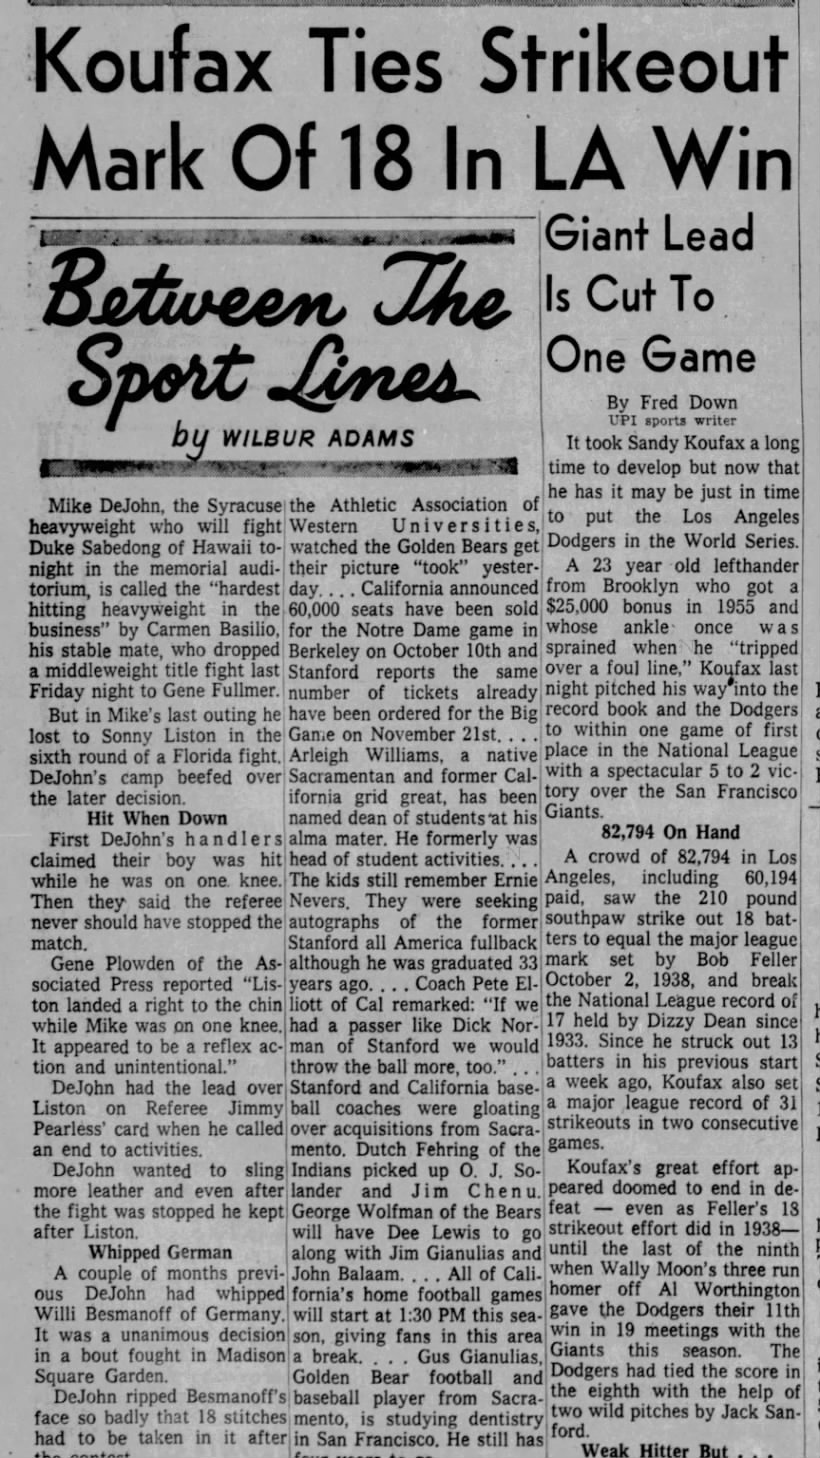 1959-09-01 MLB Notes - Sandy Koufax Ks 18, ties Feller